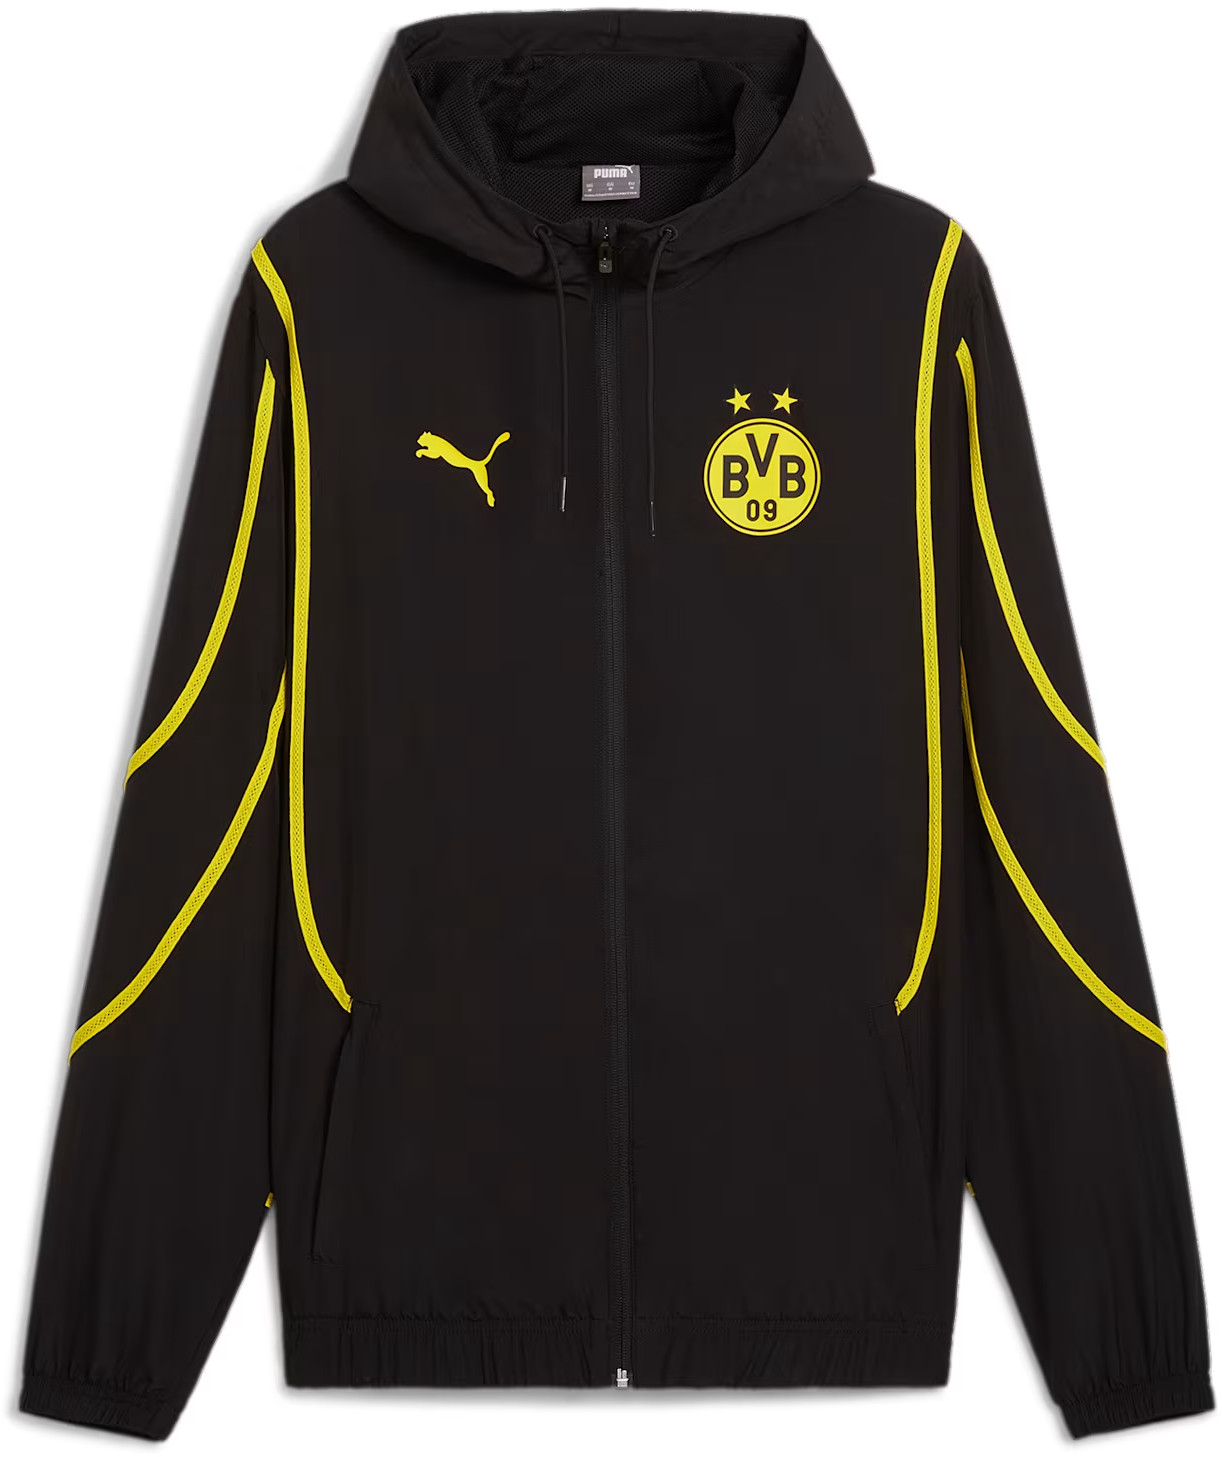 Chaqueta con capucha Puma Borussia Dortmund Pre-Match Men's Woven Soccer Jacket